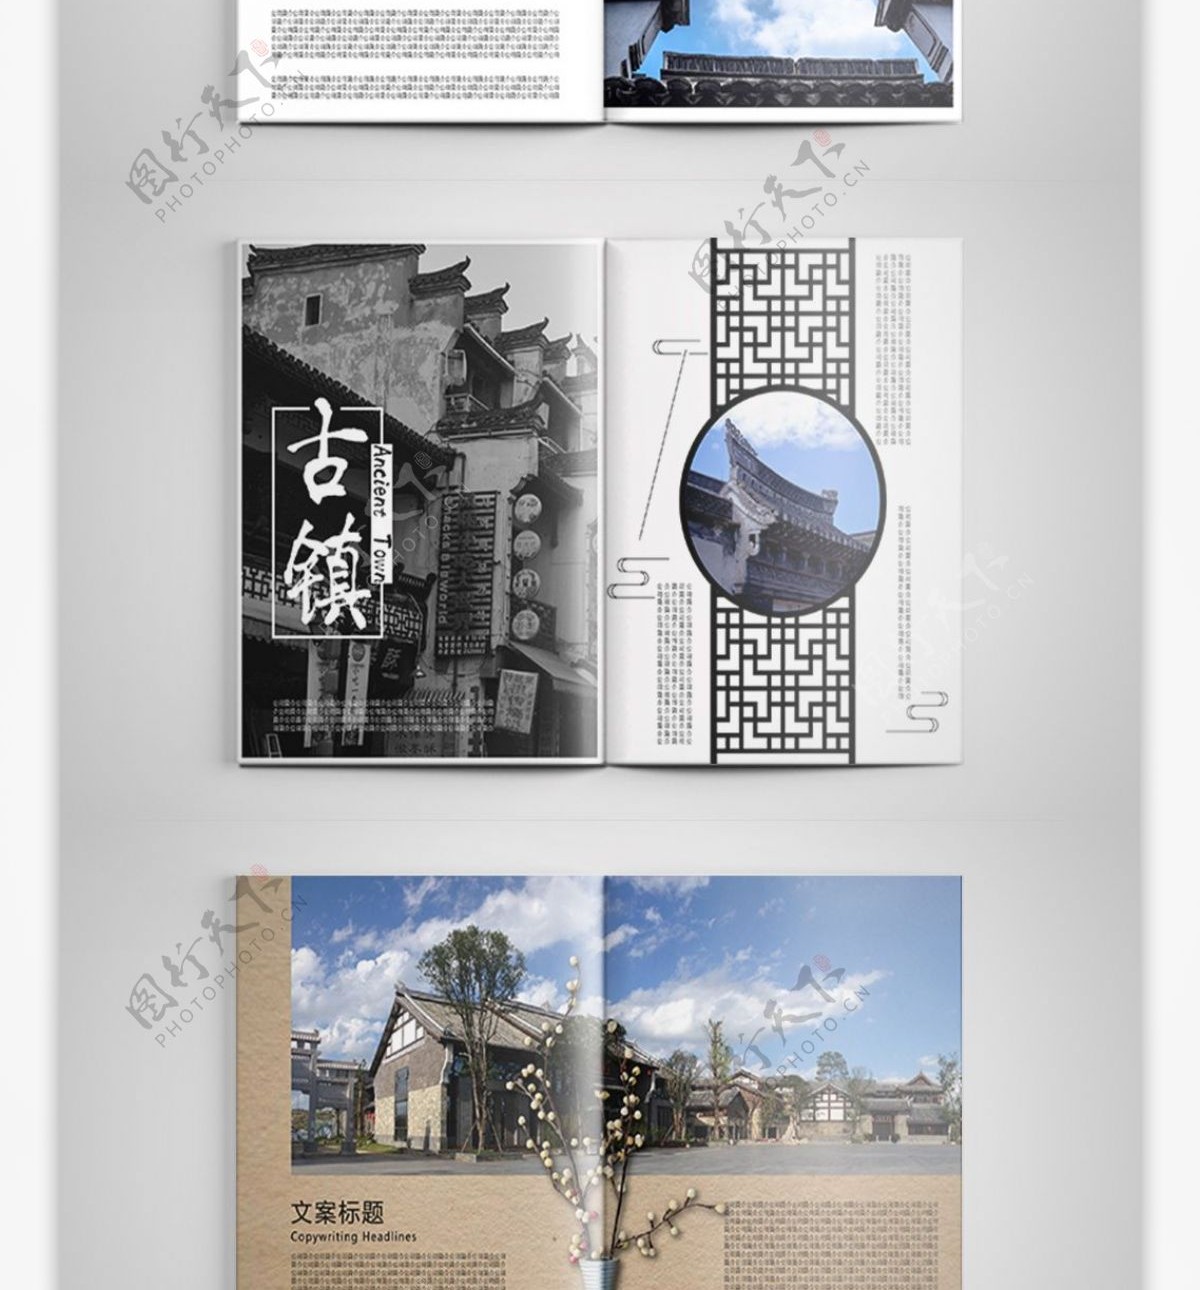 中国风大气古镇旅游宣传画册